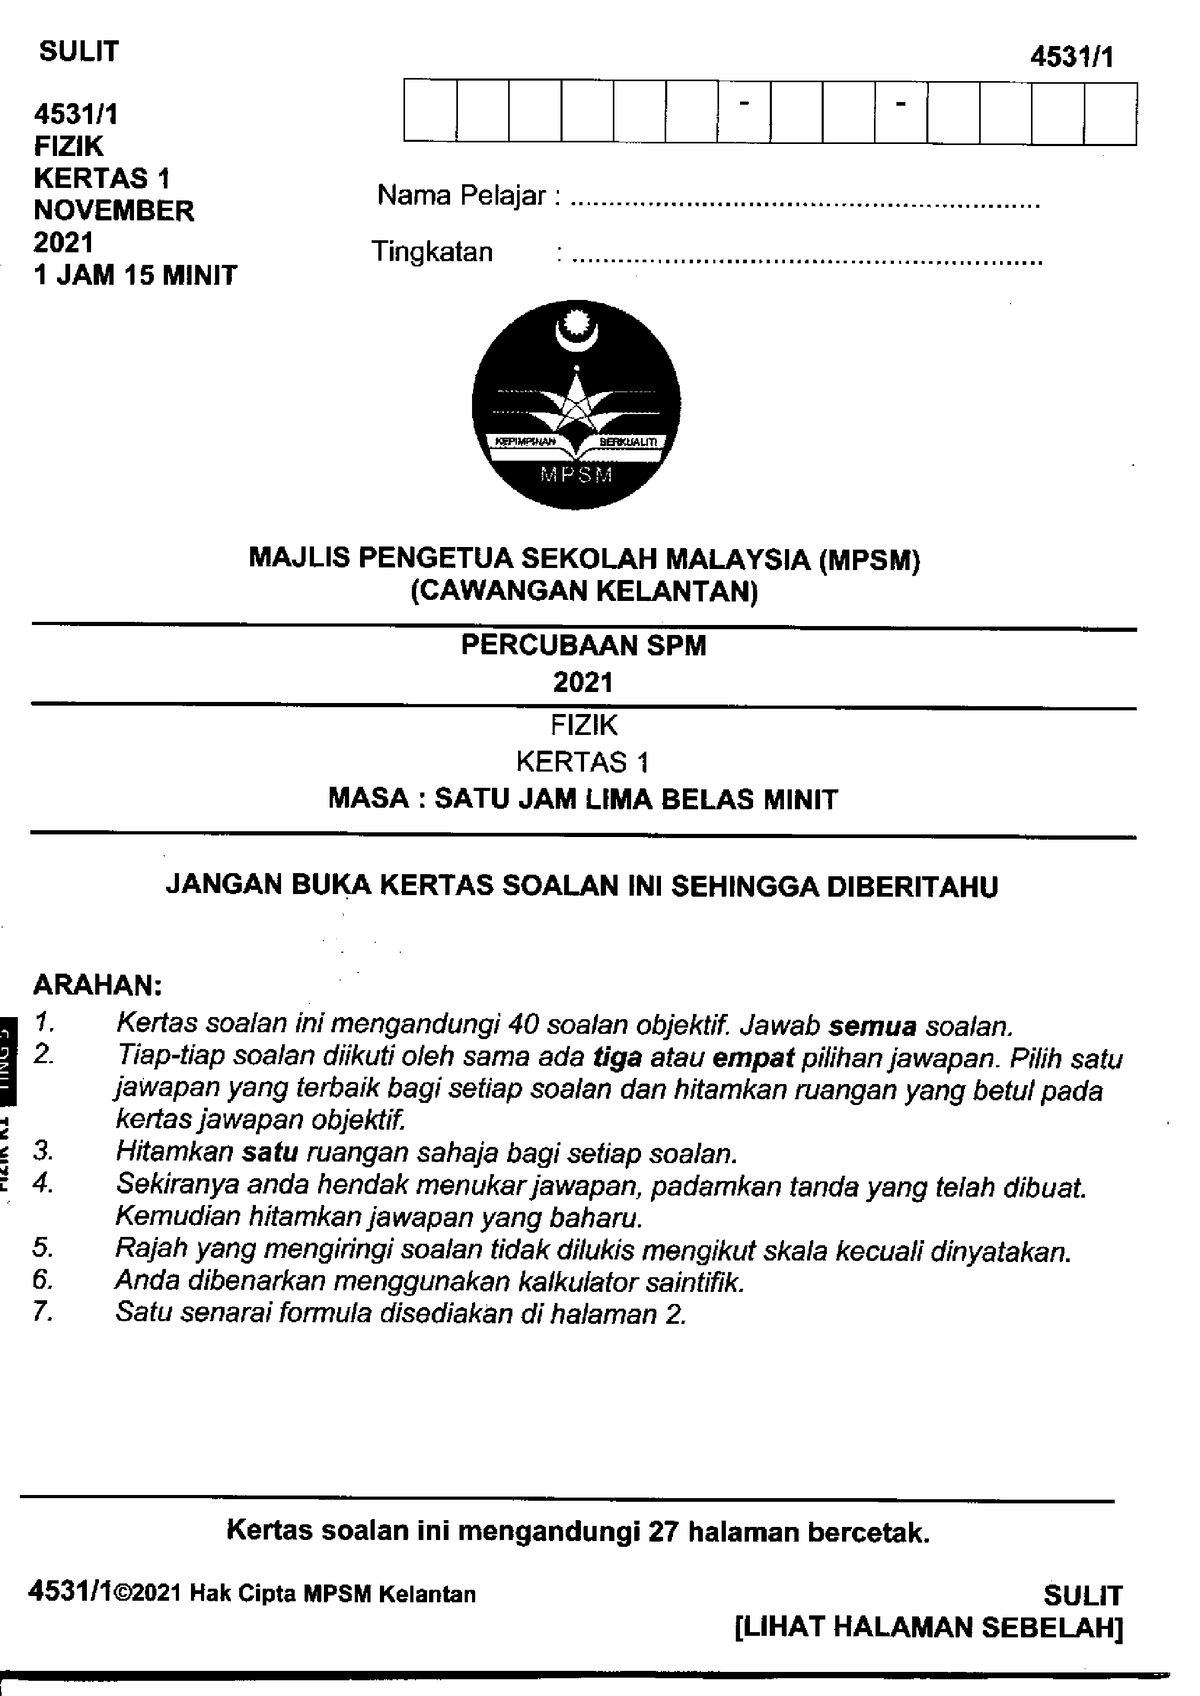 PEPERIKSAAN PERCUBAAN Kertas Trial Fizik Kelantan K1 2021  physical